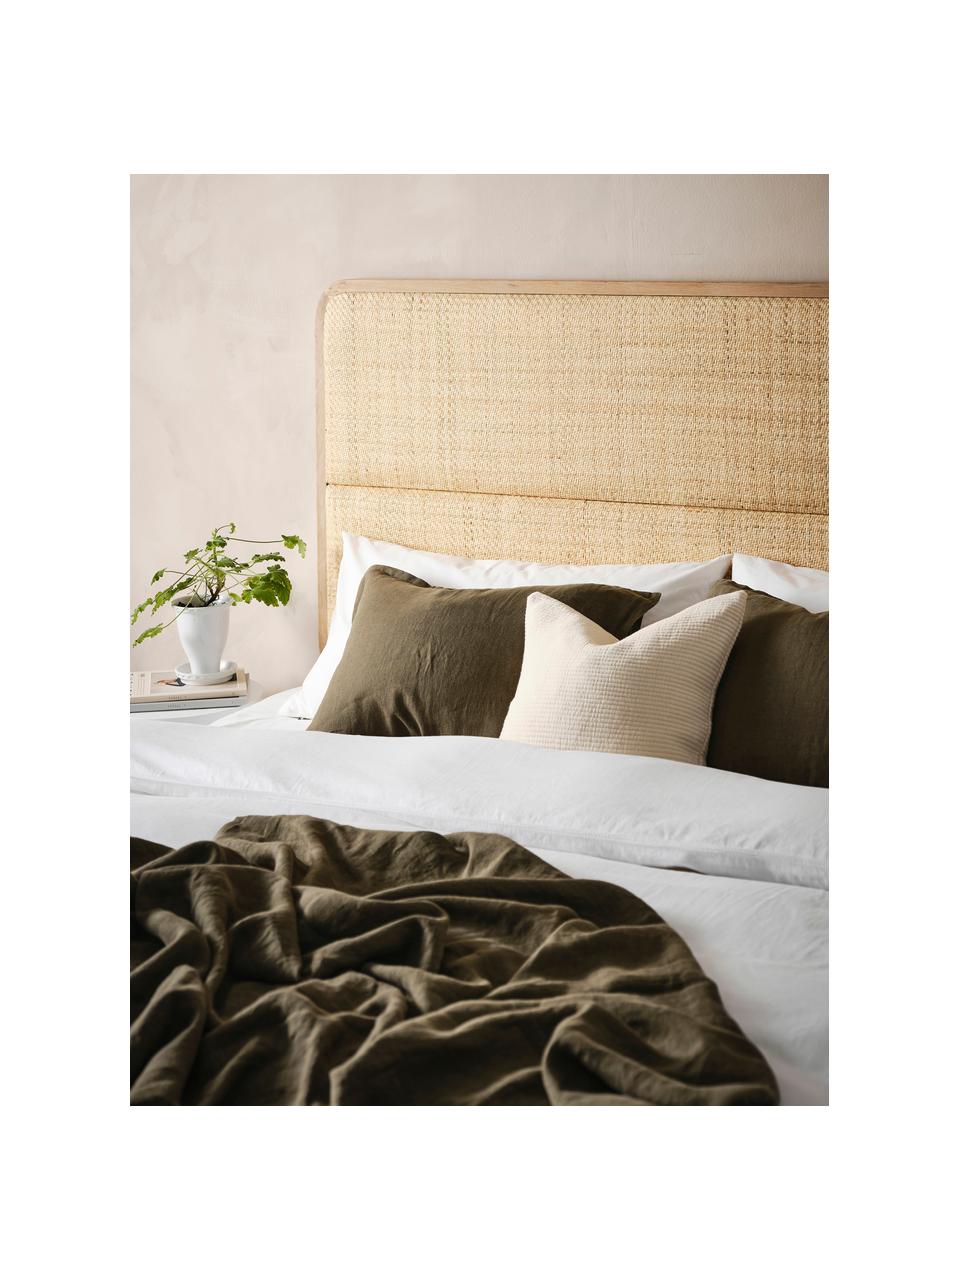 Zagłówek do łóżka z rattanu z drewnianą ramą Byrum, Drewno dębowe, drewno brzozowe, rattan, drewno warstwowe, Rattan, S 165 x W 85 cm